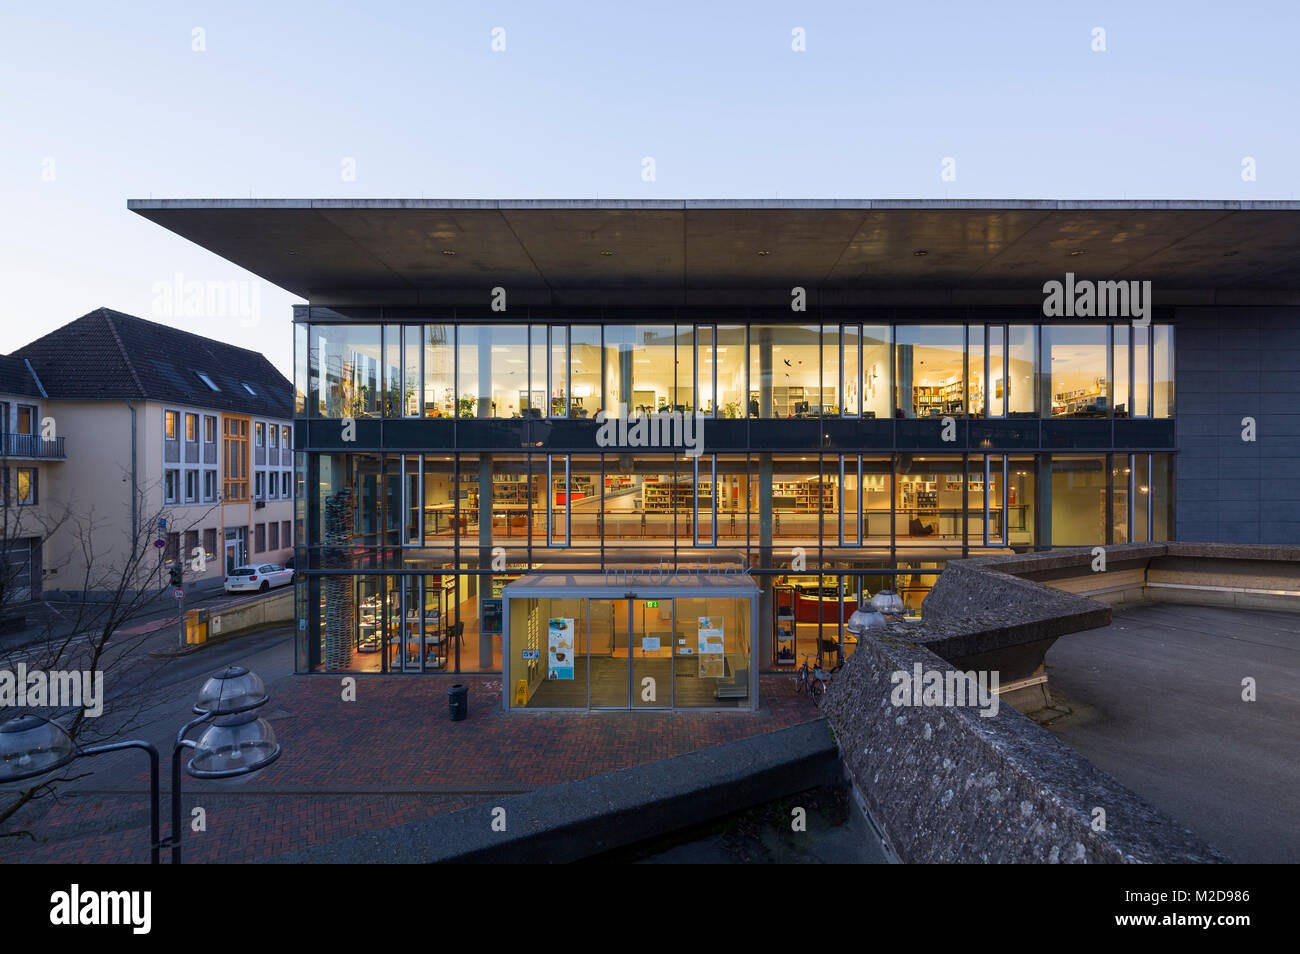 En Krefeld, Medioteca, Bücherei, 2008 vom Architekturbüro HPP erbaut, Innenarchitektur von UKW, Jochen Usinger und Martin Klein-Wiehle Foto de stock